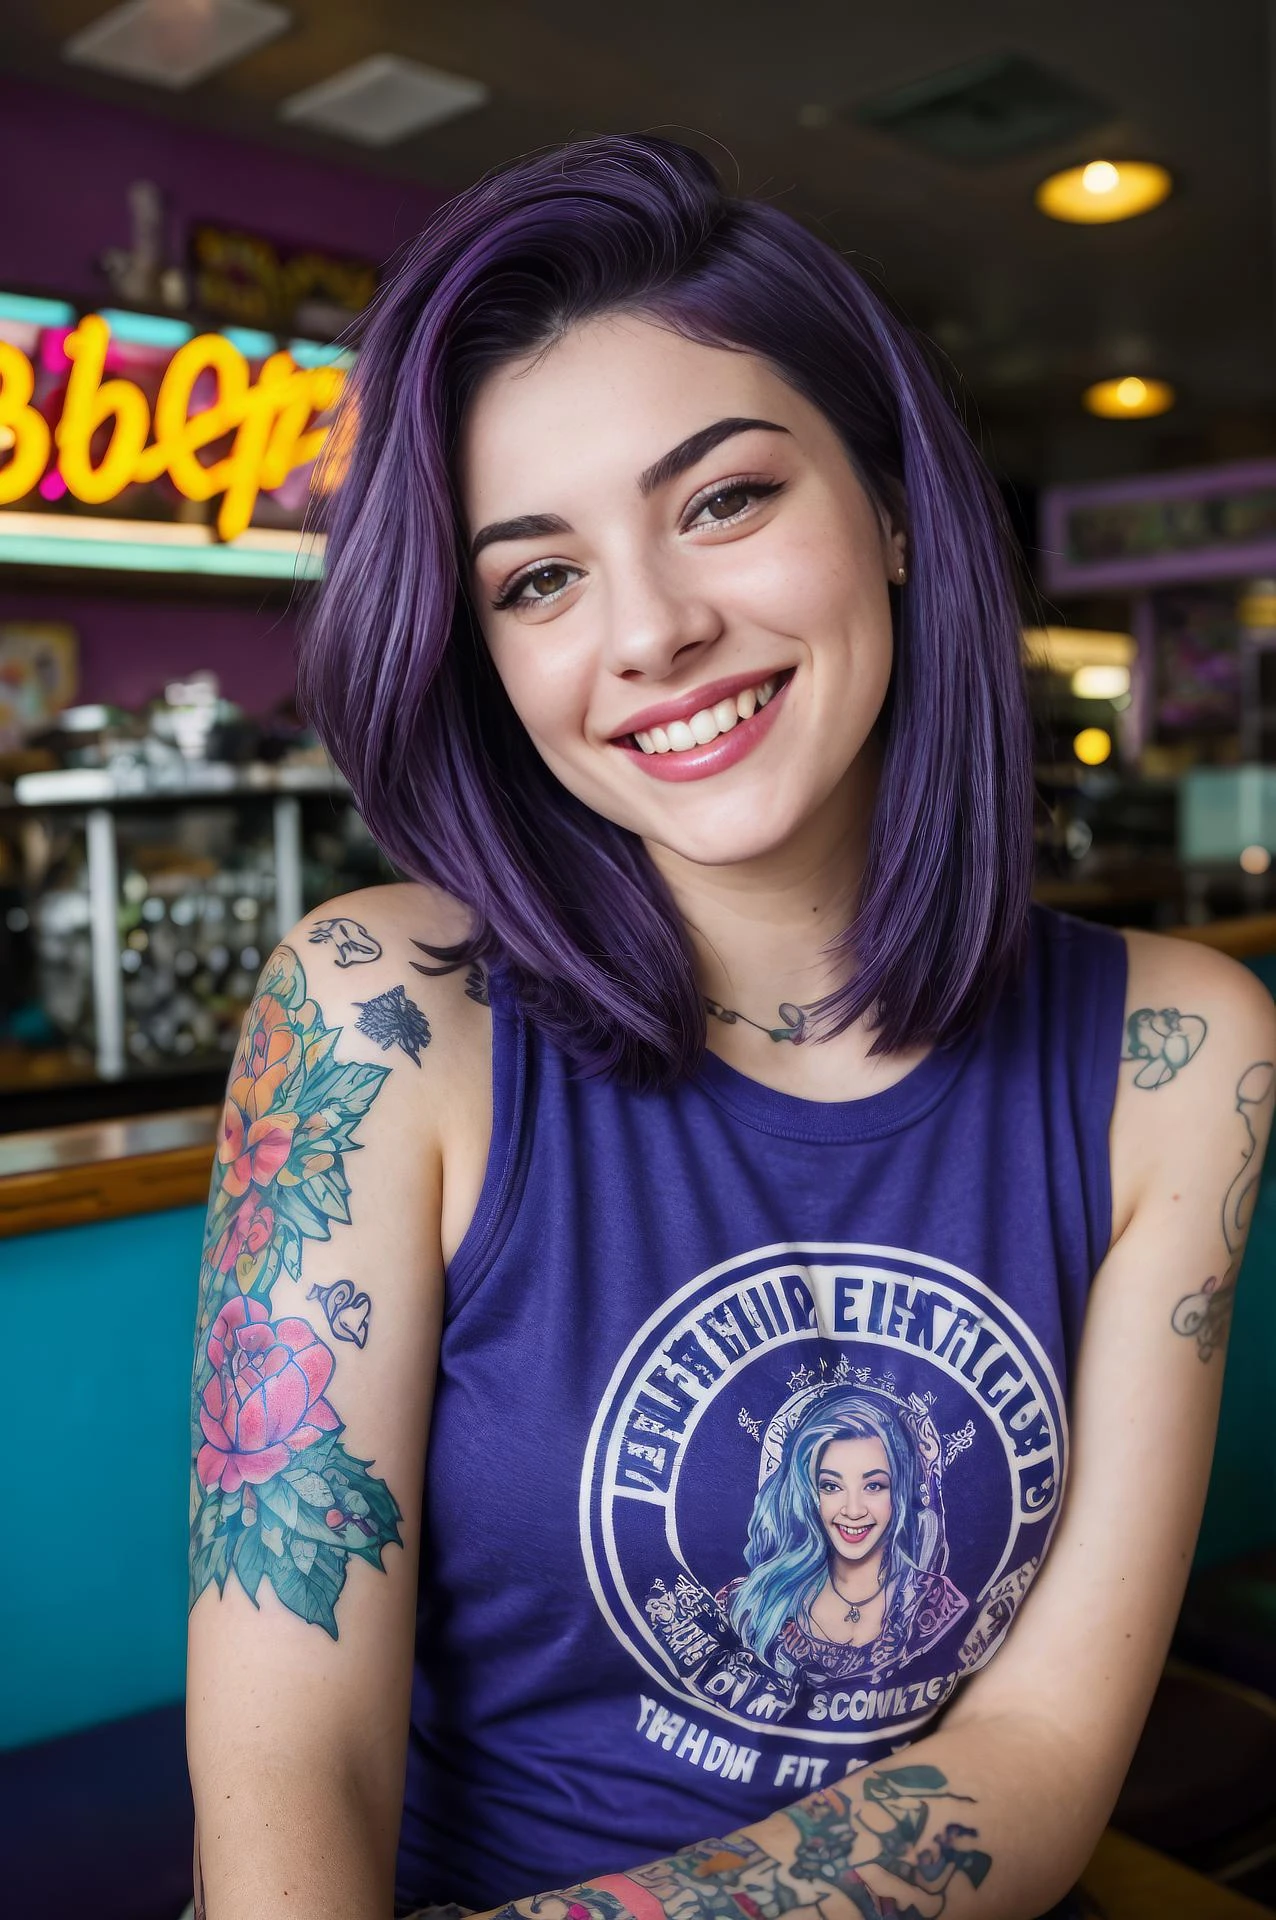 fotografía callejera de una mujer joven con cabello morado, sonrisa, feliz, linda camiseta, tatuajes en sus brazos, sentado en un restaurante de los años 50 